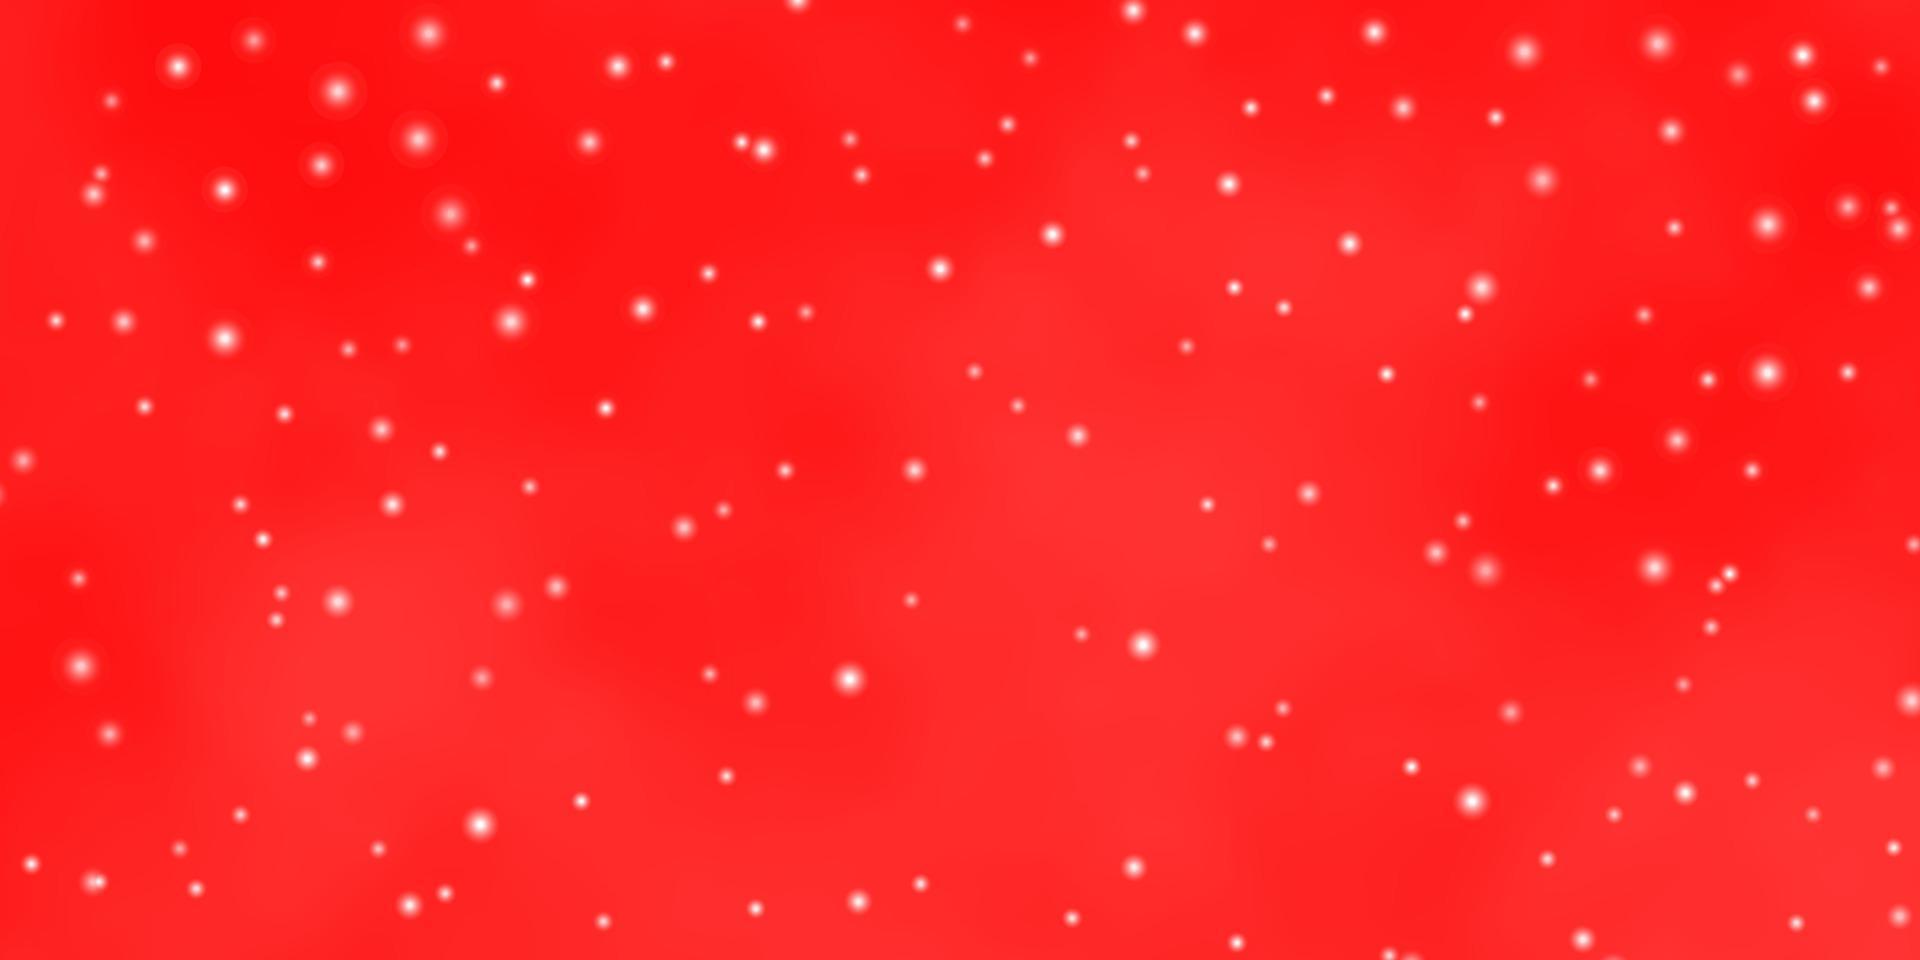 textura vector vermelho claro com belas estrelas.